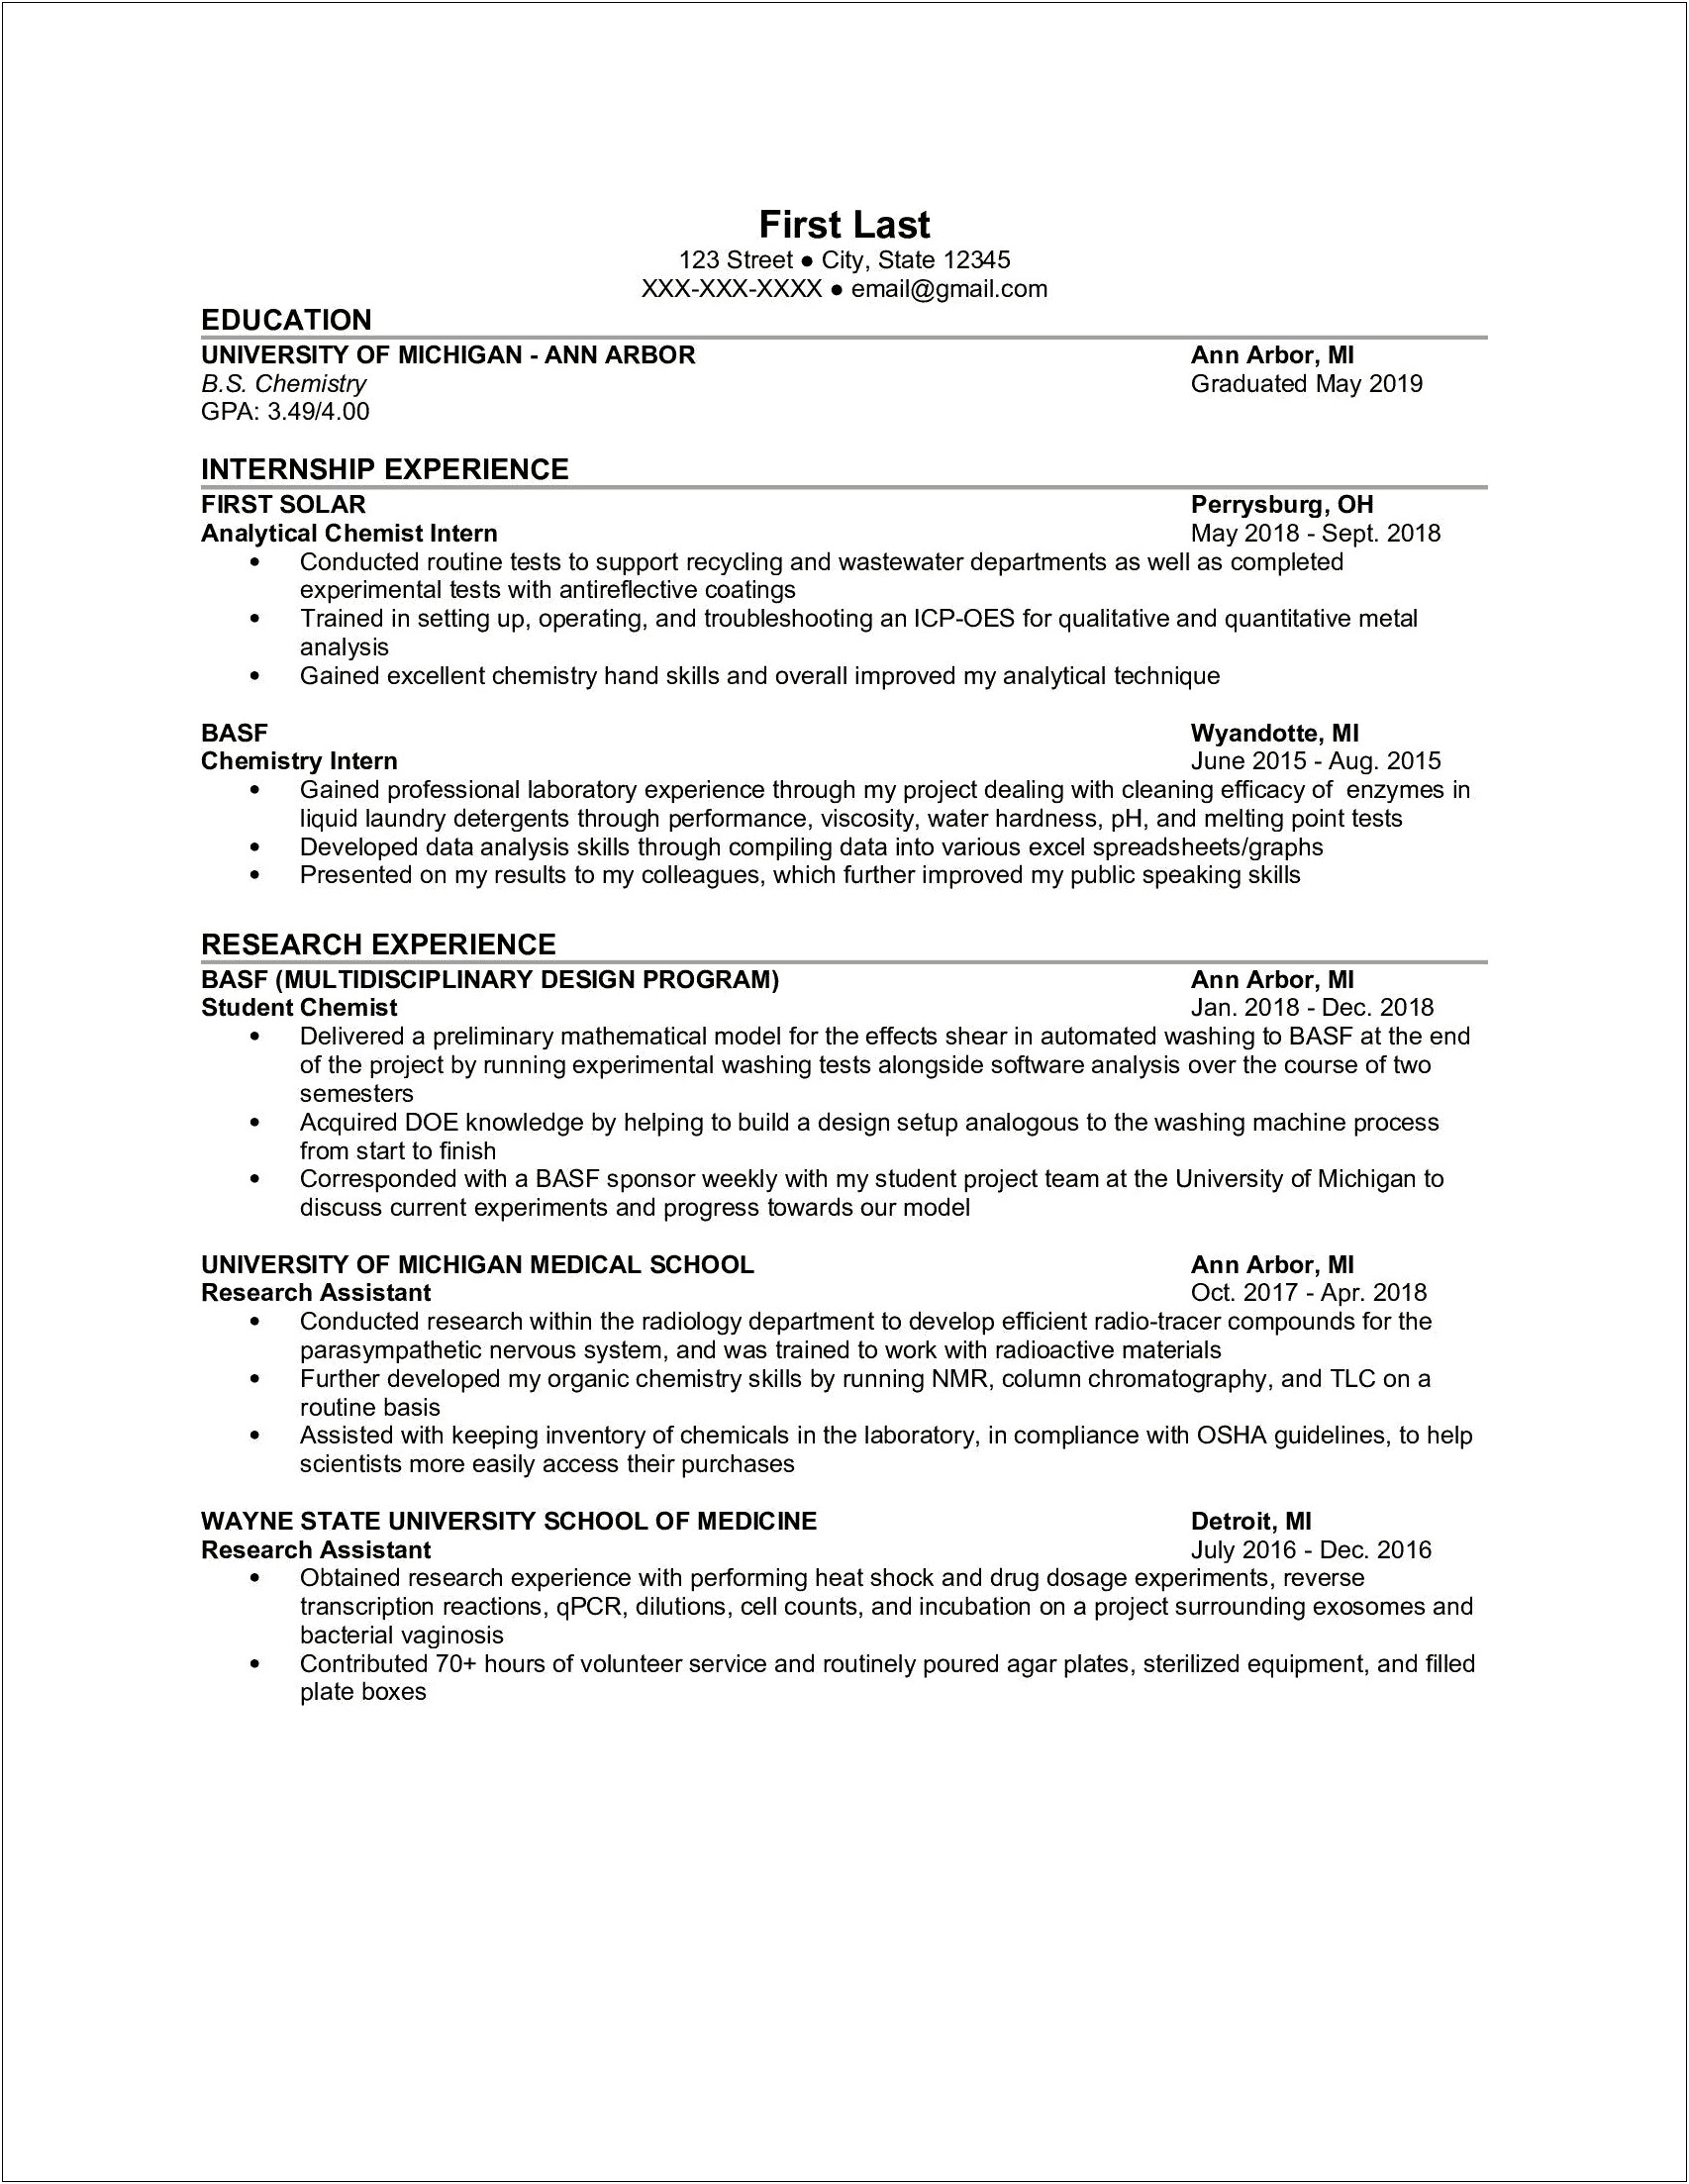 Resume Skills For Chemistry Reddit